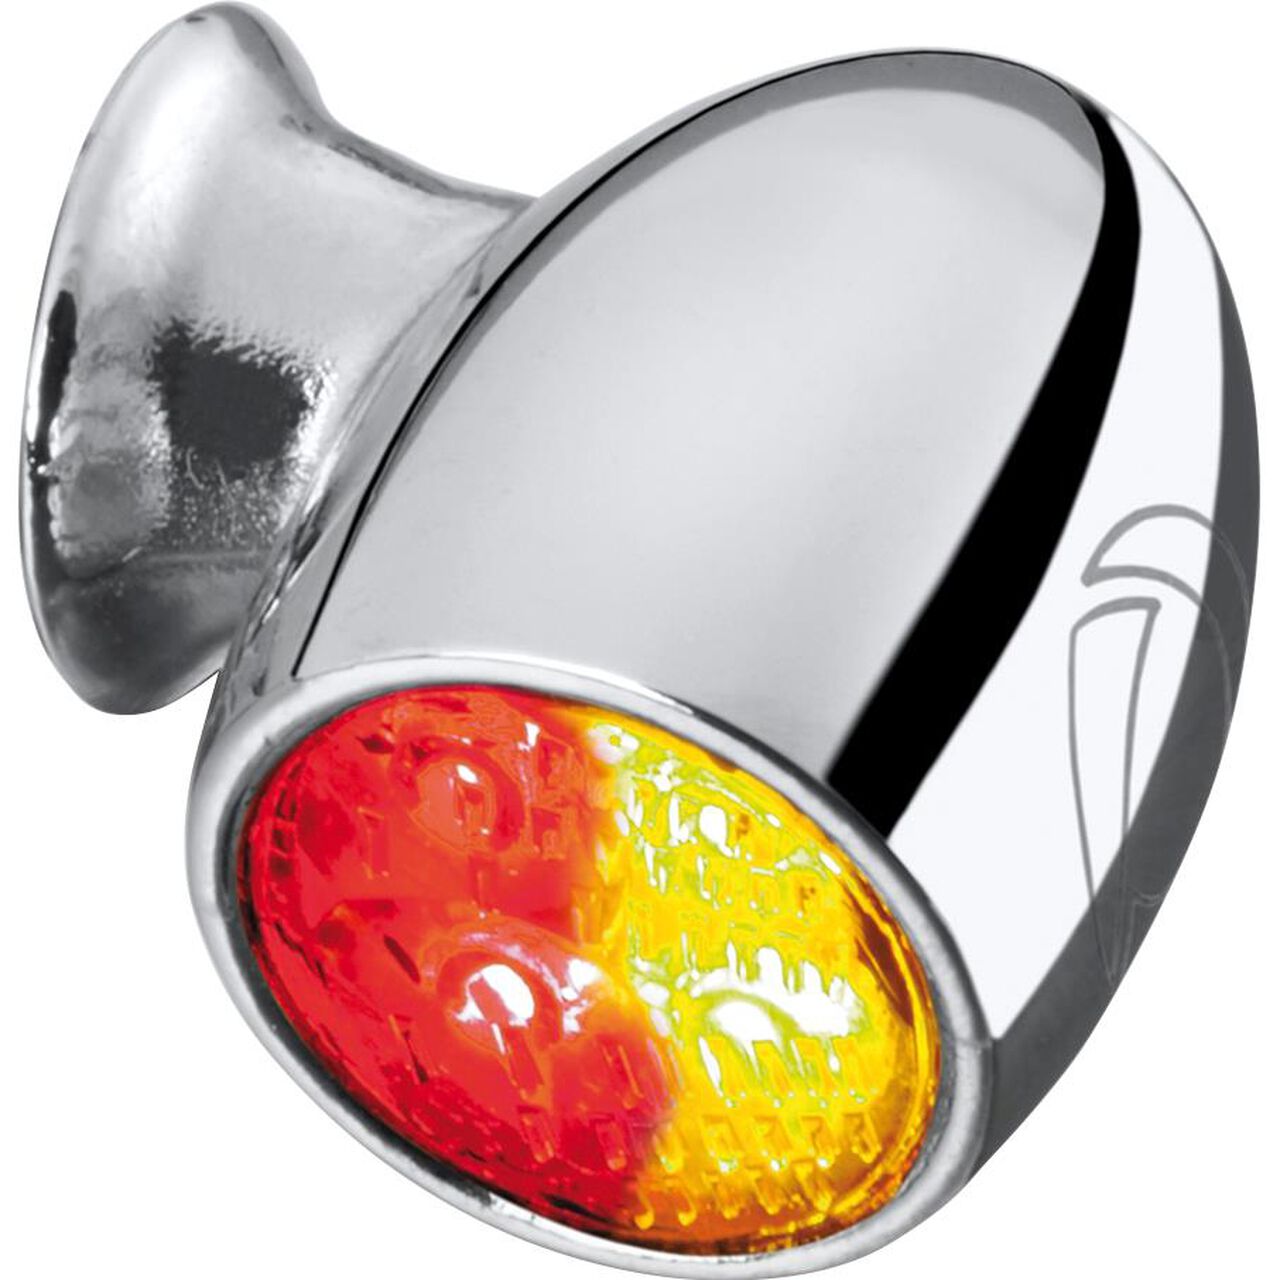 LED-Blinker in der hinteren Bremsleuchte des Fahrzeugs. Moderne Autolaterne  Stockfotografie - Alamy